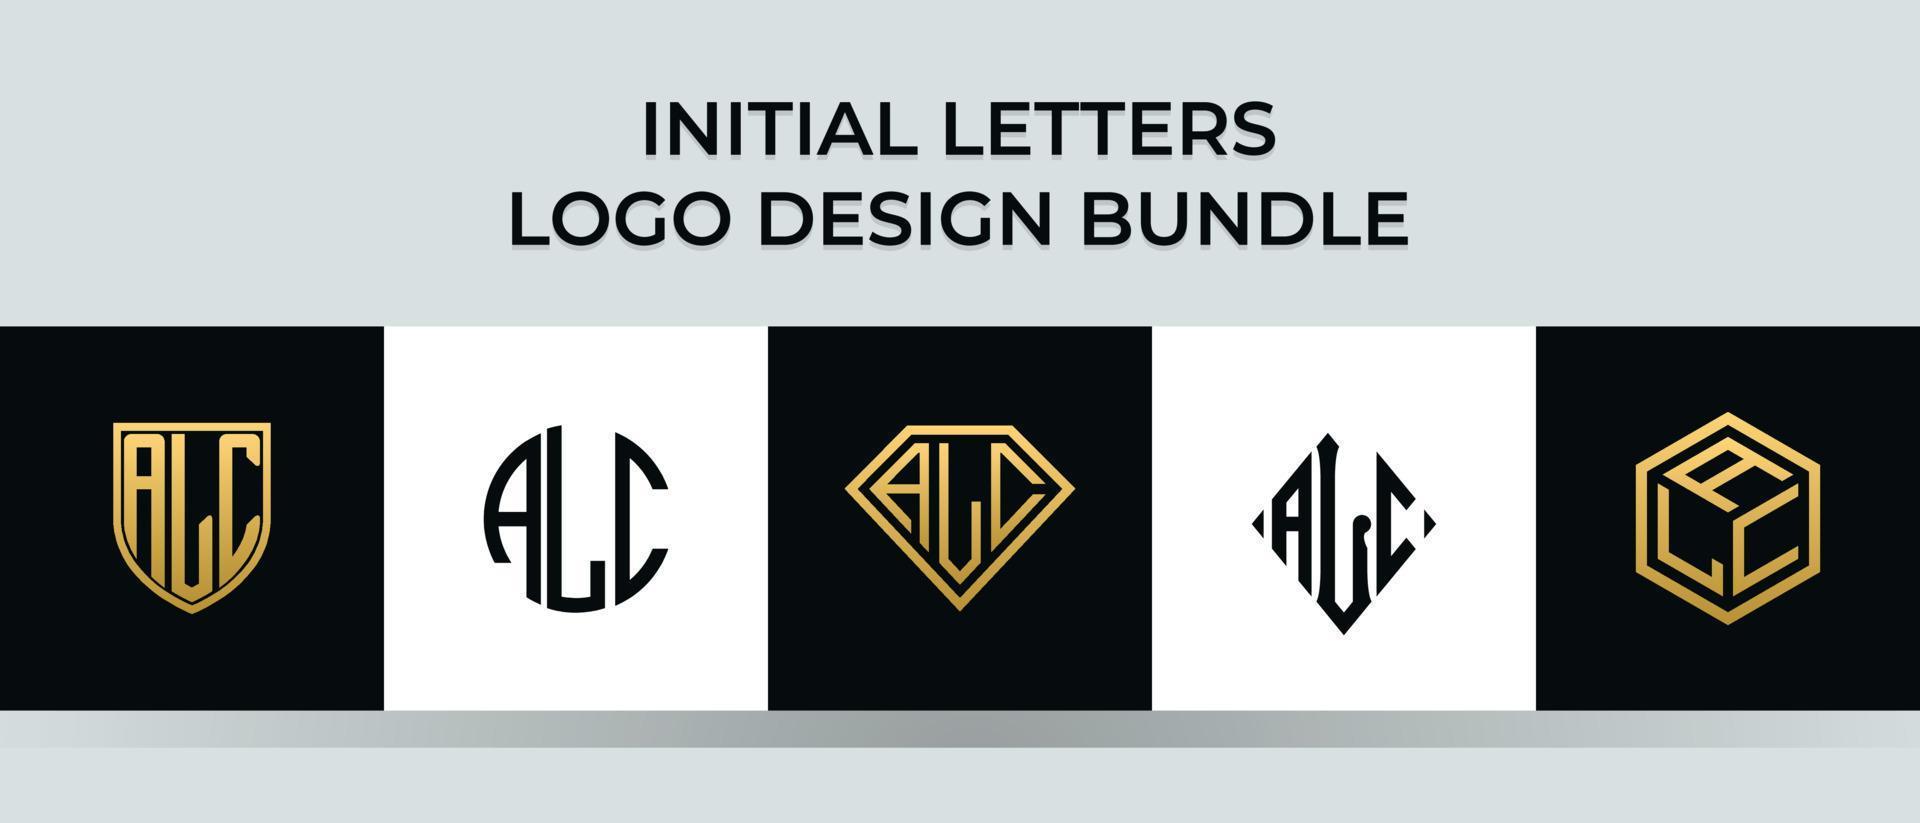 lettere iniziali alc logo design bundle vettore